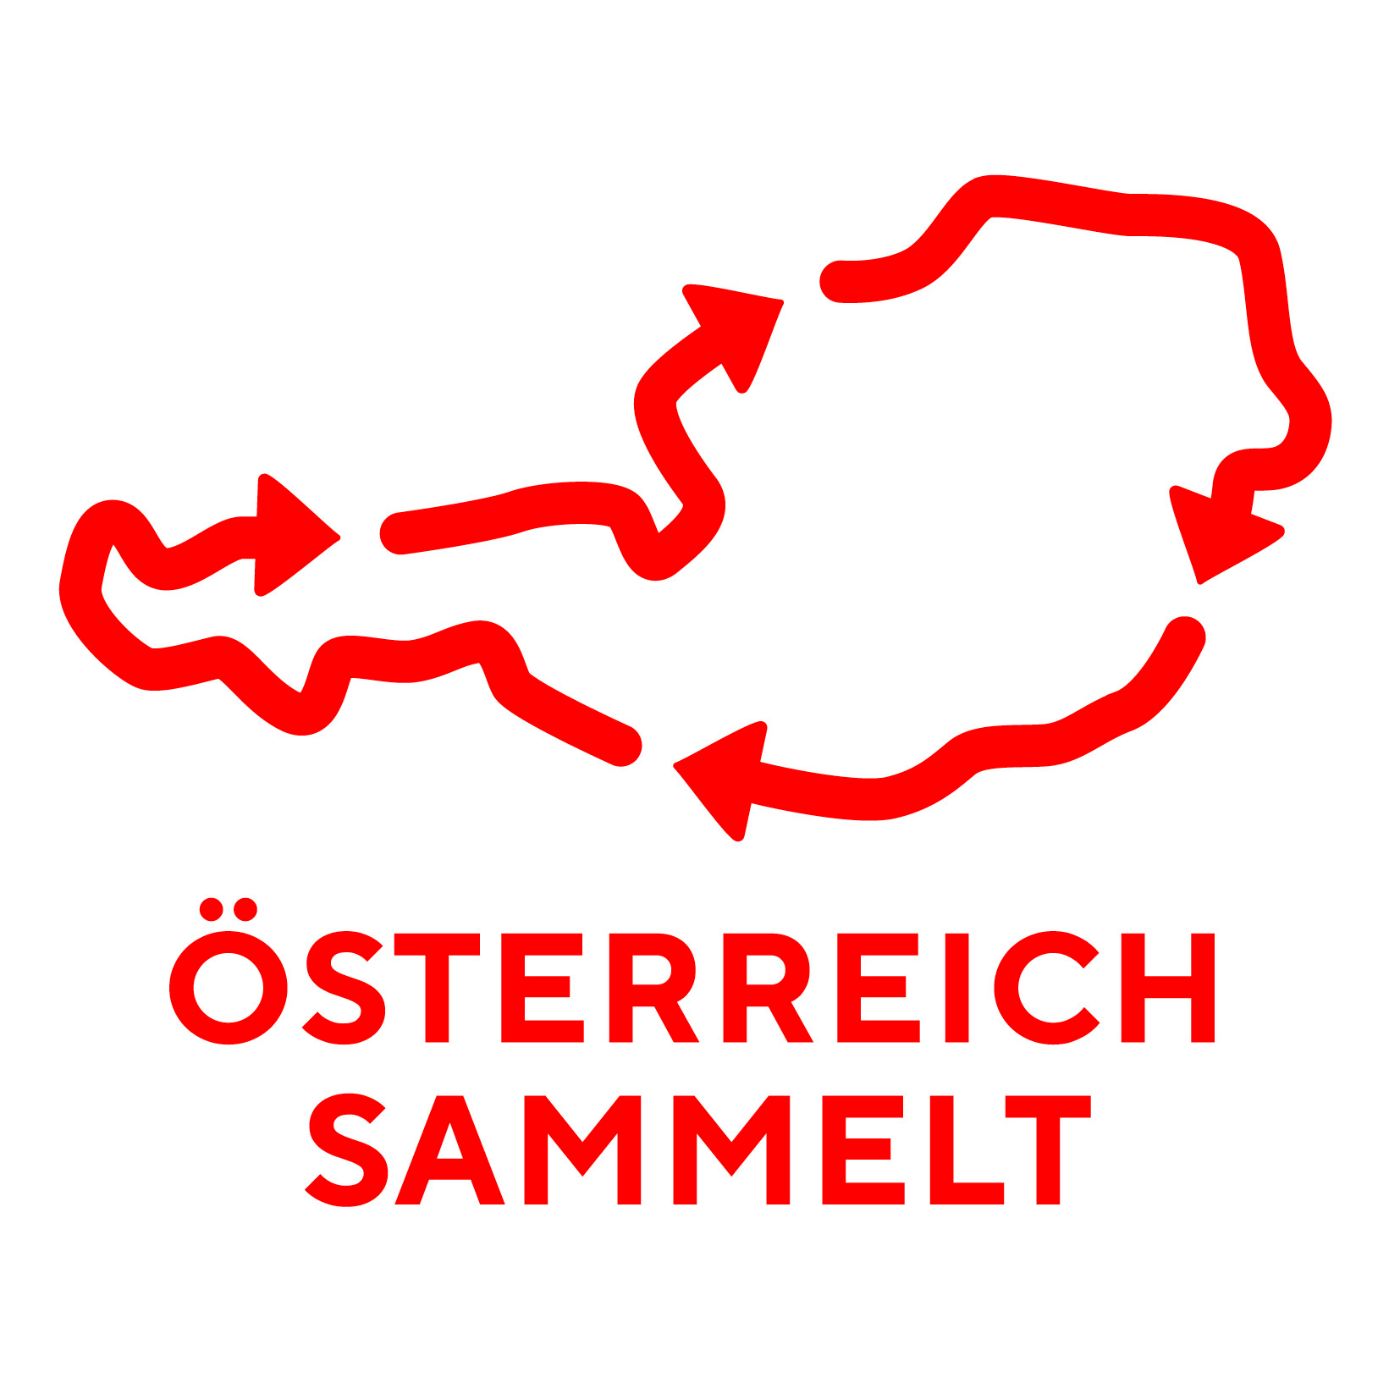 Logo_OEsterreich_sammelt_-_rot.jpg